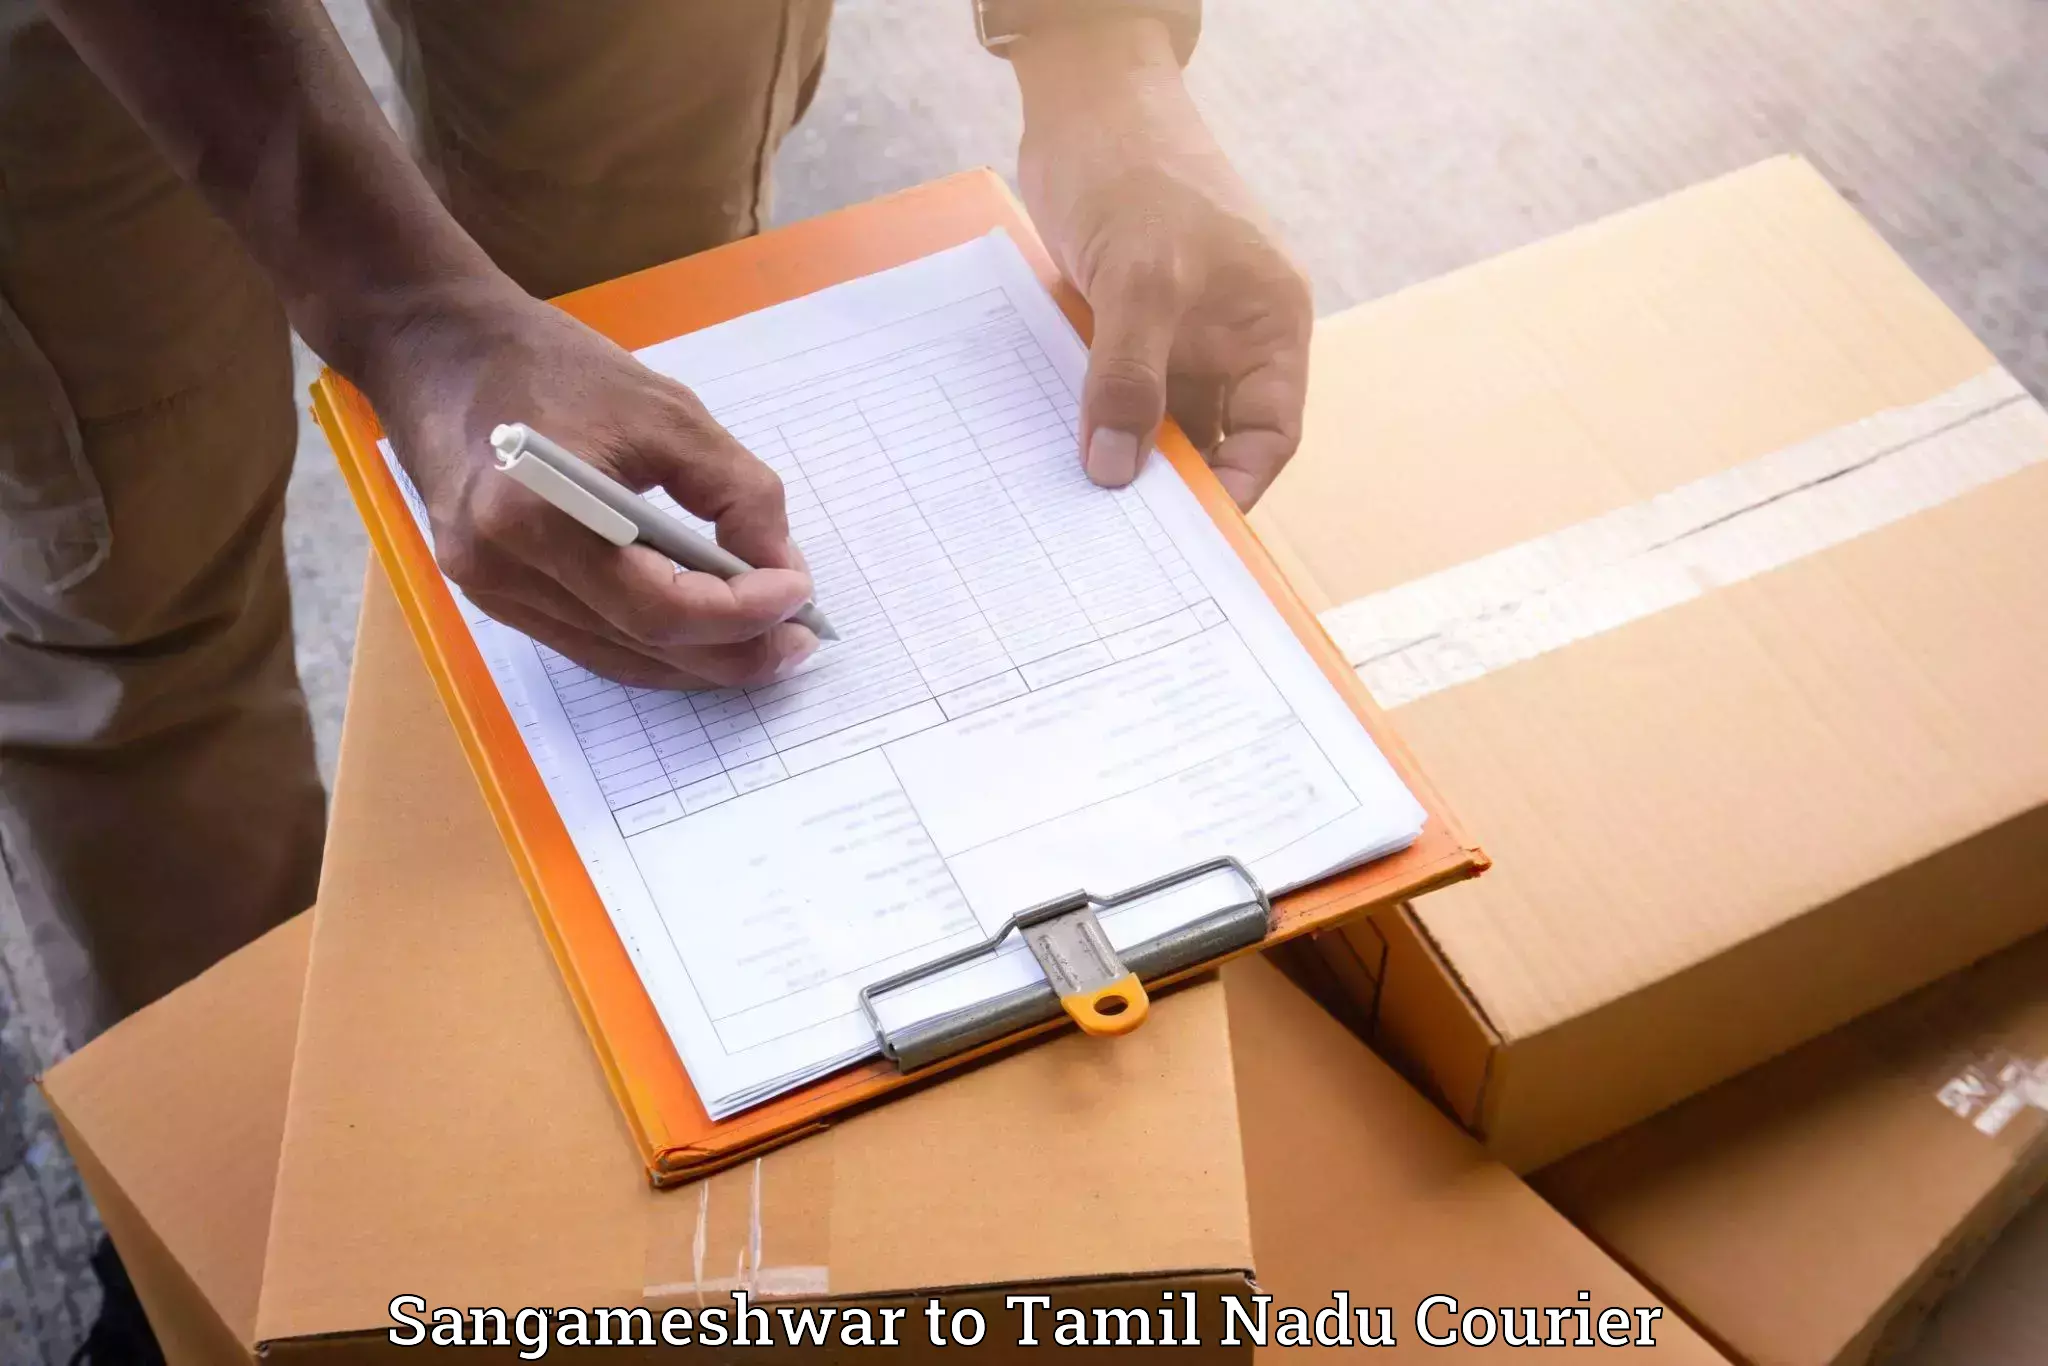 Stress-free moving Sangameshwar to Tamil Nadu